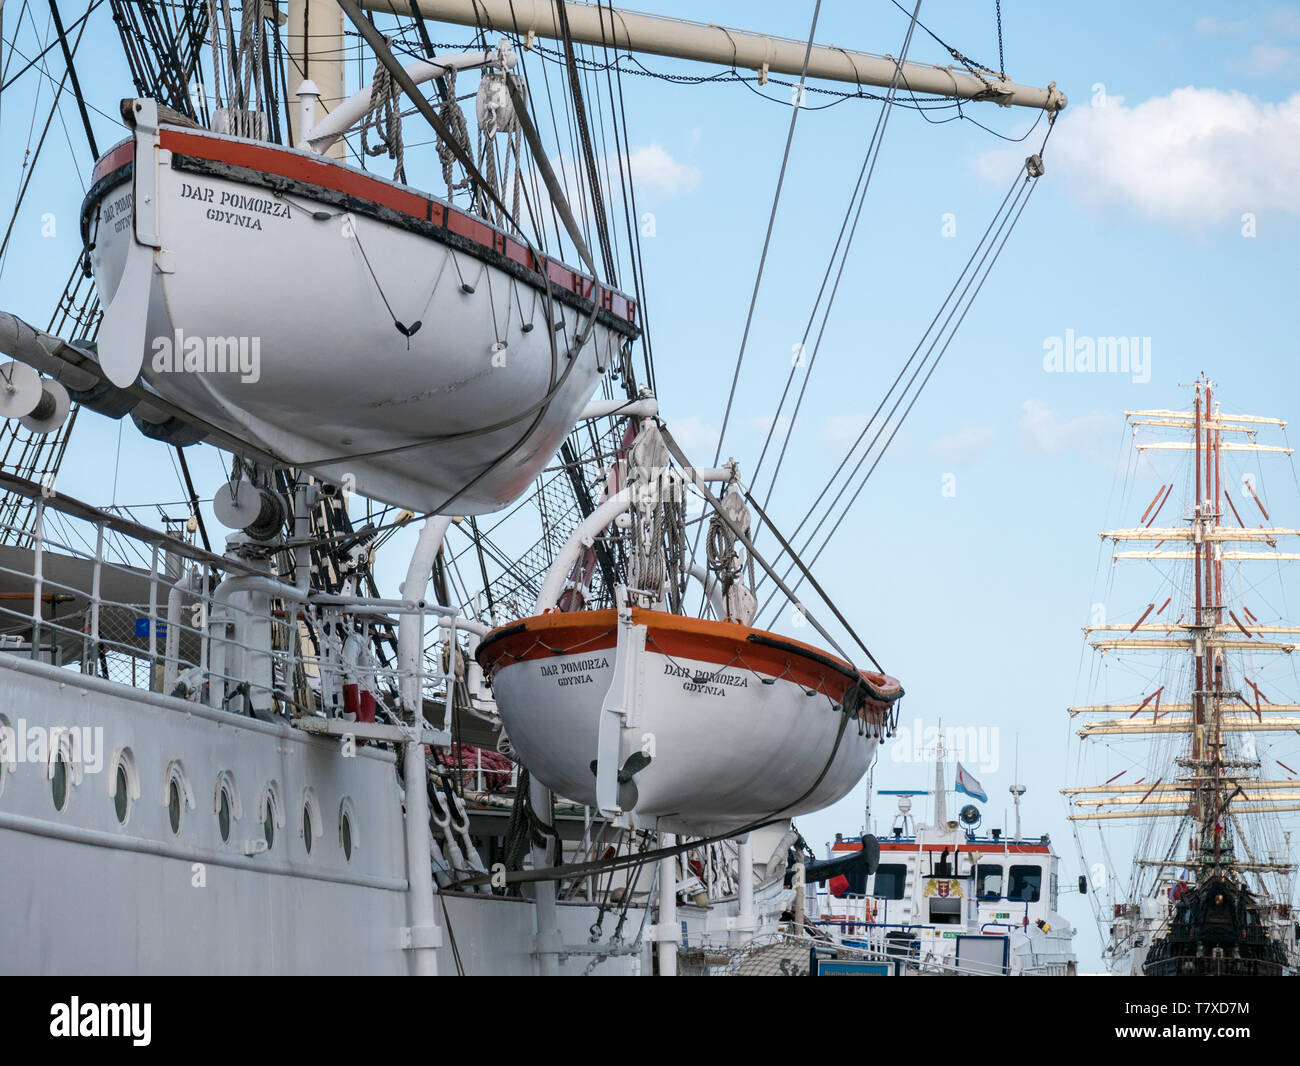 Life boats on Dar Pomorza and (in background) Dar Młodzieży tall ships, Gdynia, Poland Stock Photo